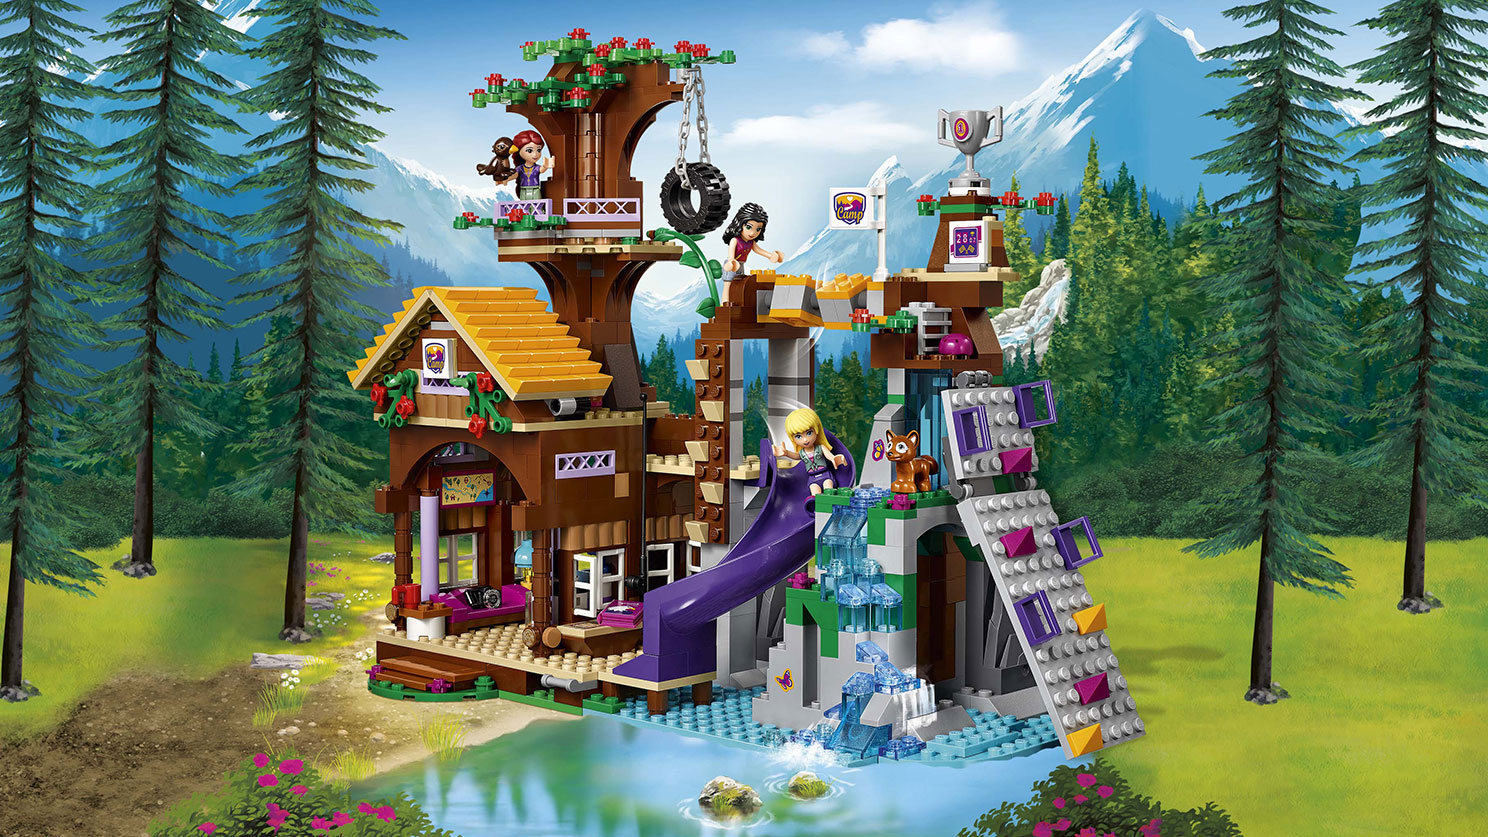 アドベンチャーキャンプ“ツリーハウス” - ビデオ - LEGO.comキッズ